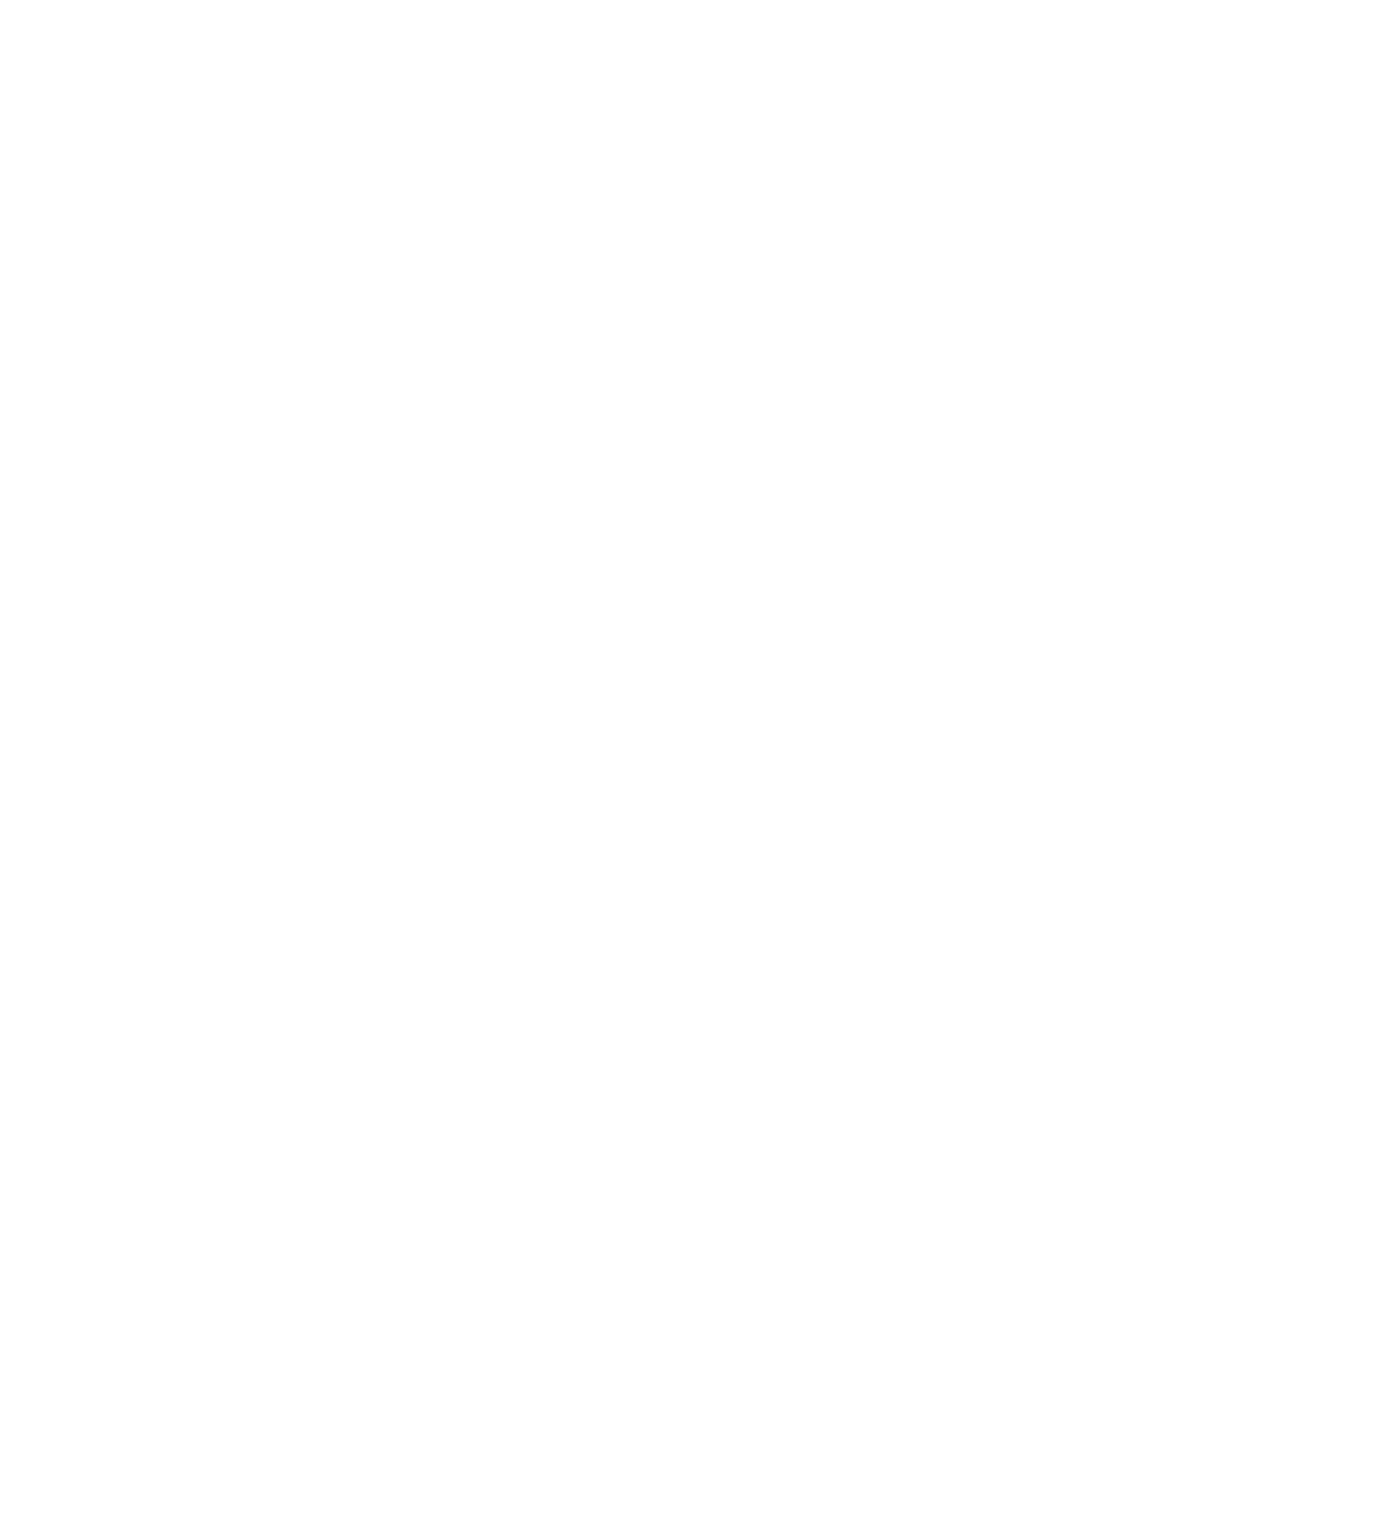 Deliveroo logo for dark backgrounds (transparent PNG)